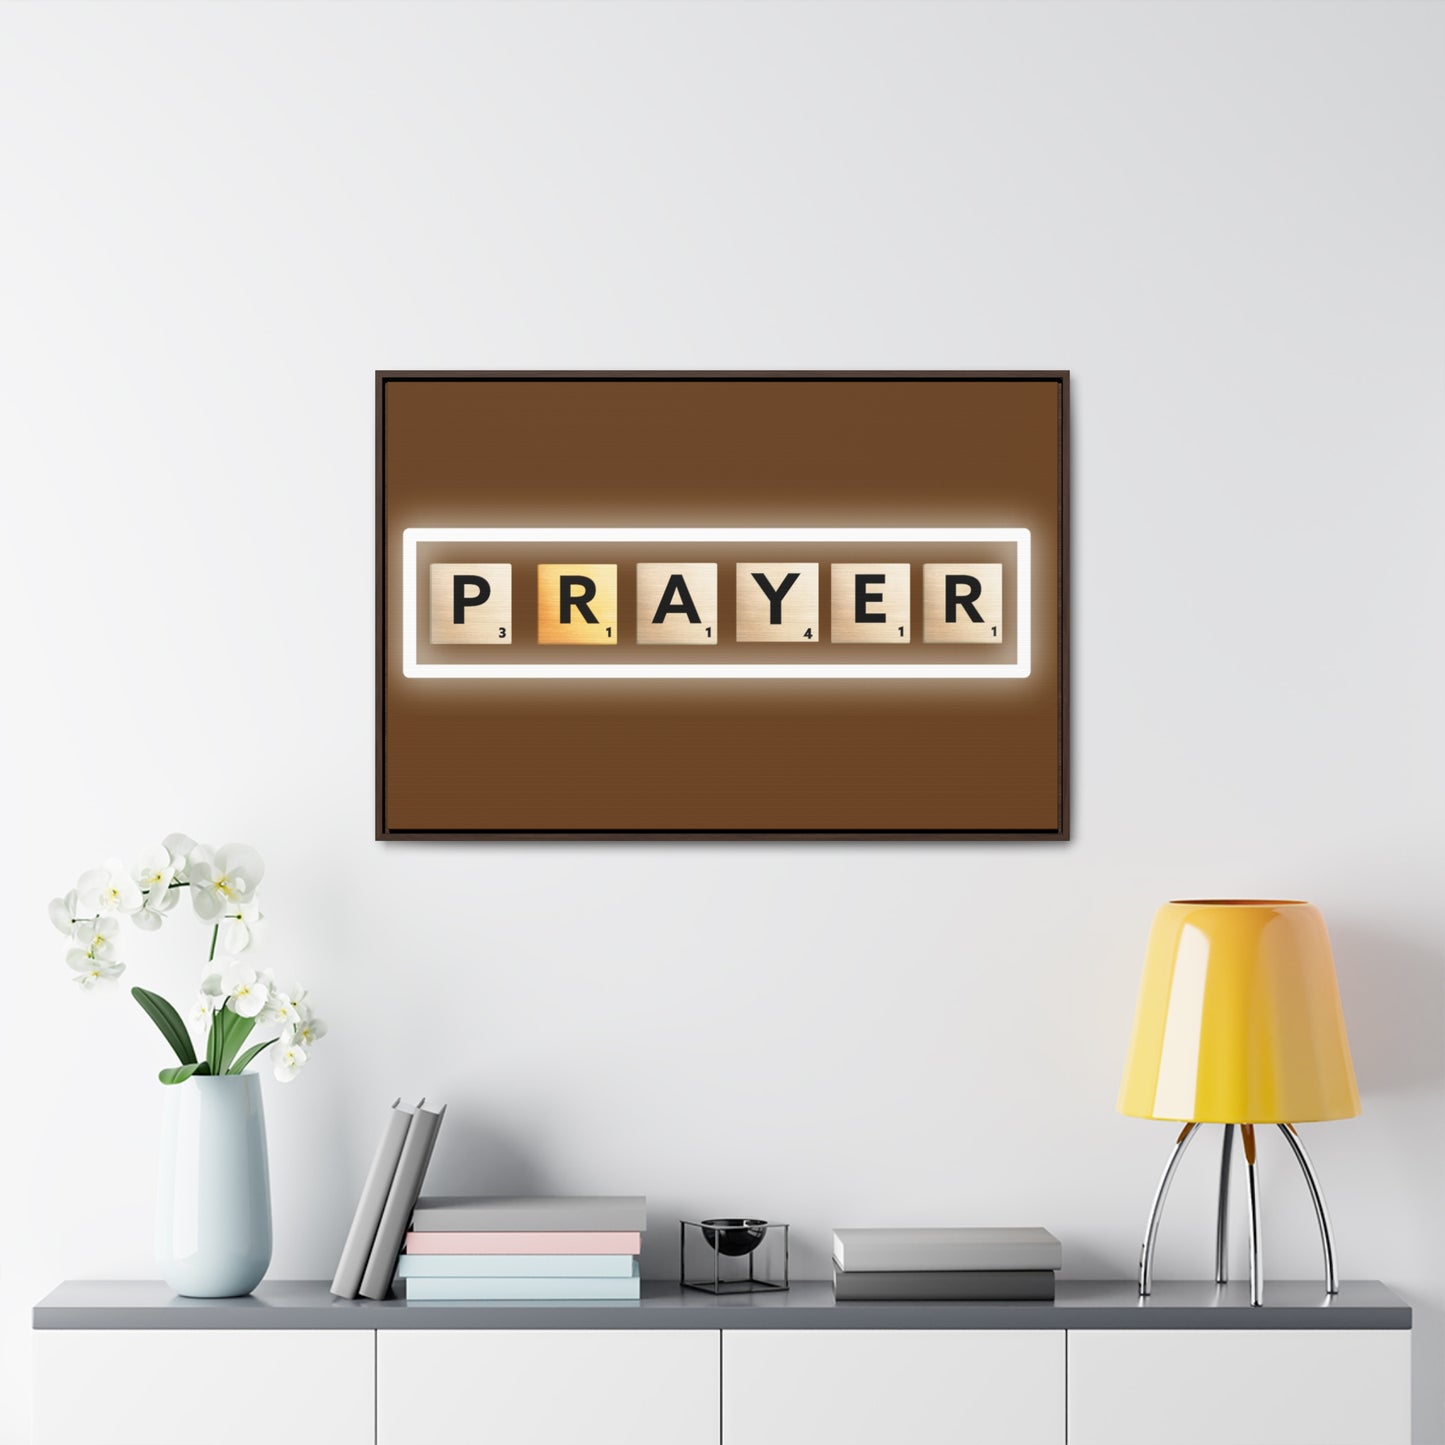 Arte cristiano de la pared: oración (marco flotante)